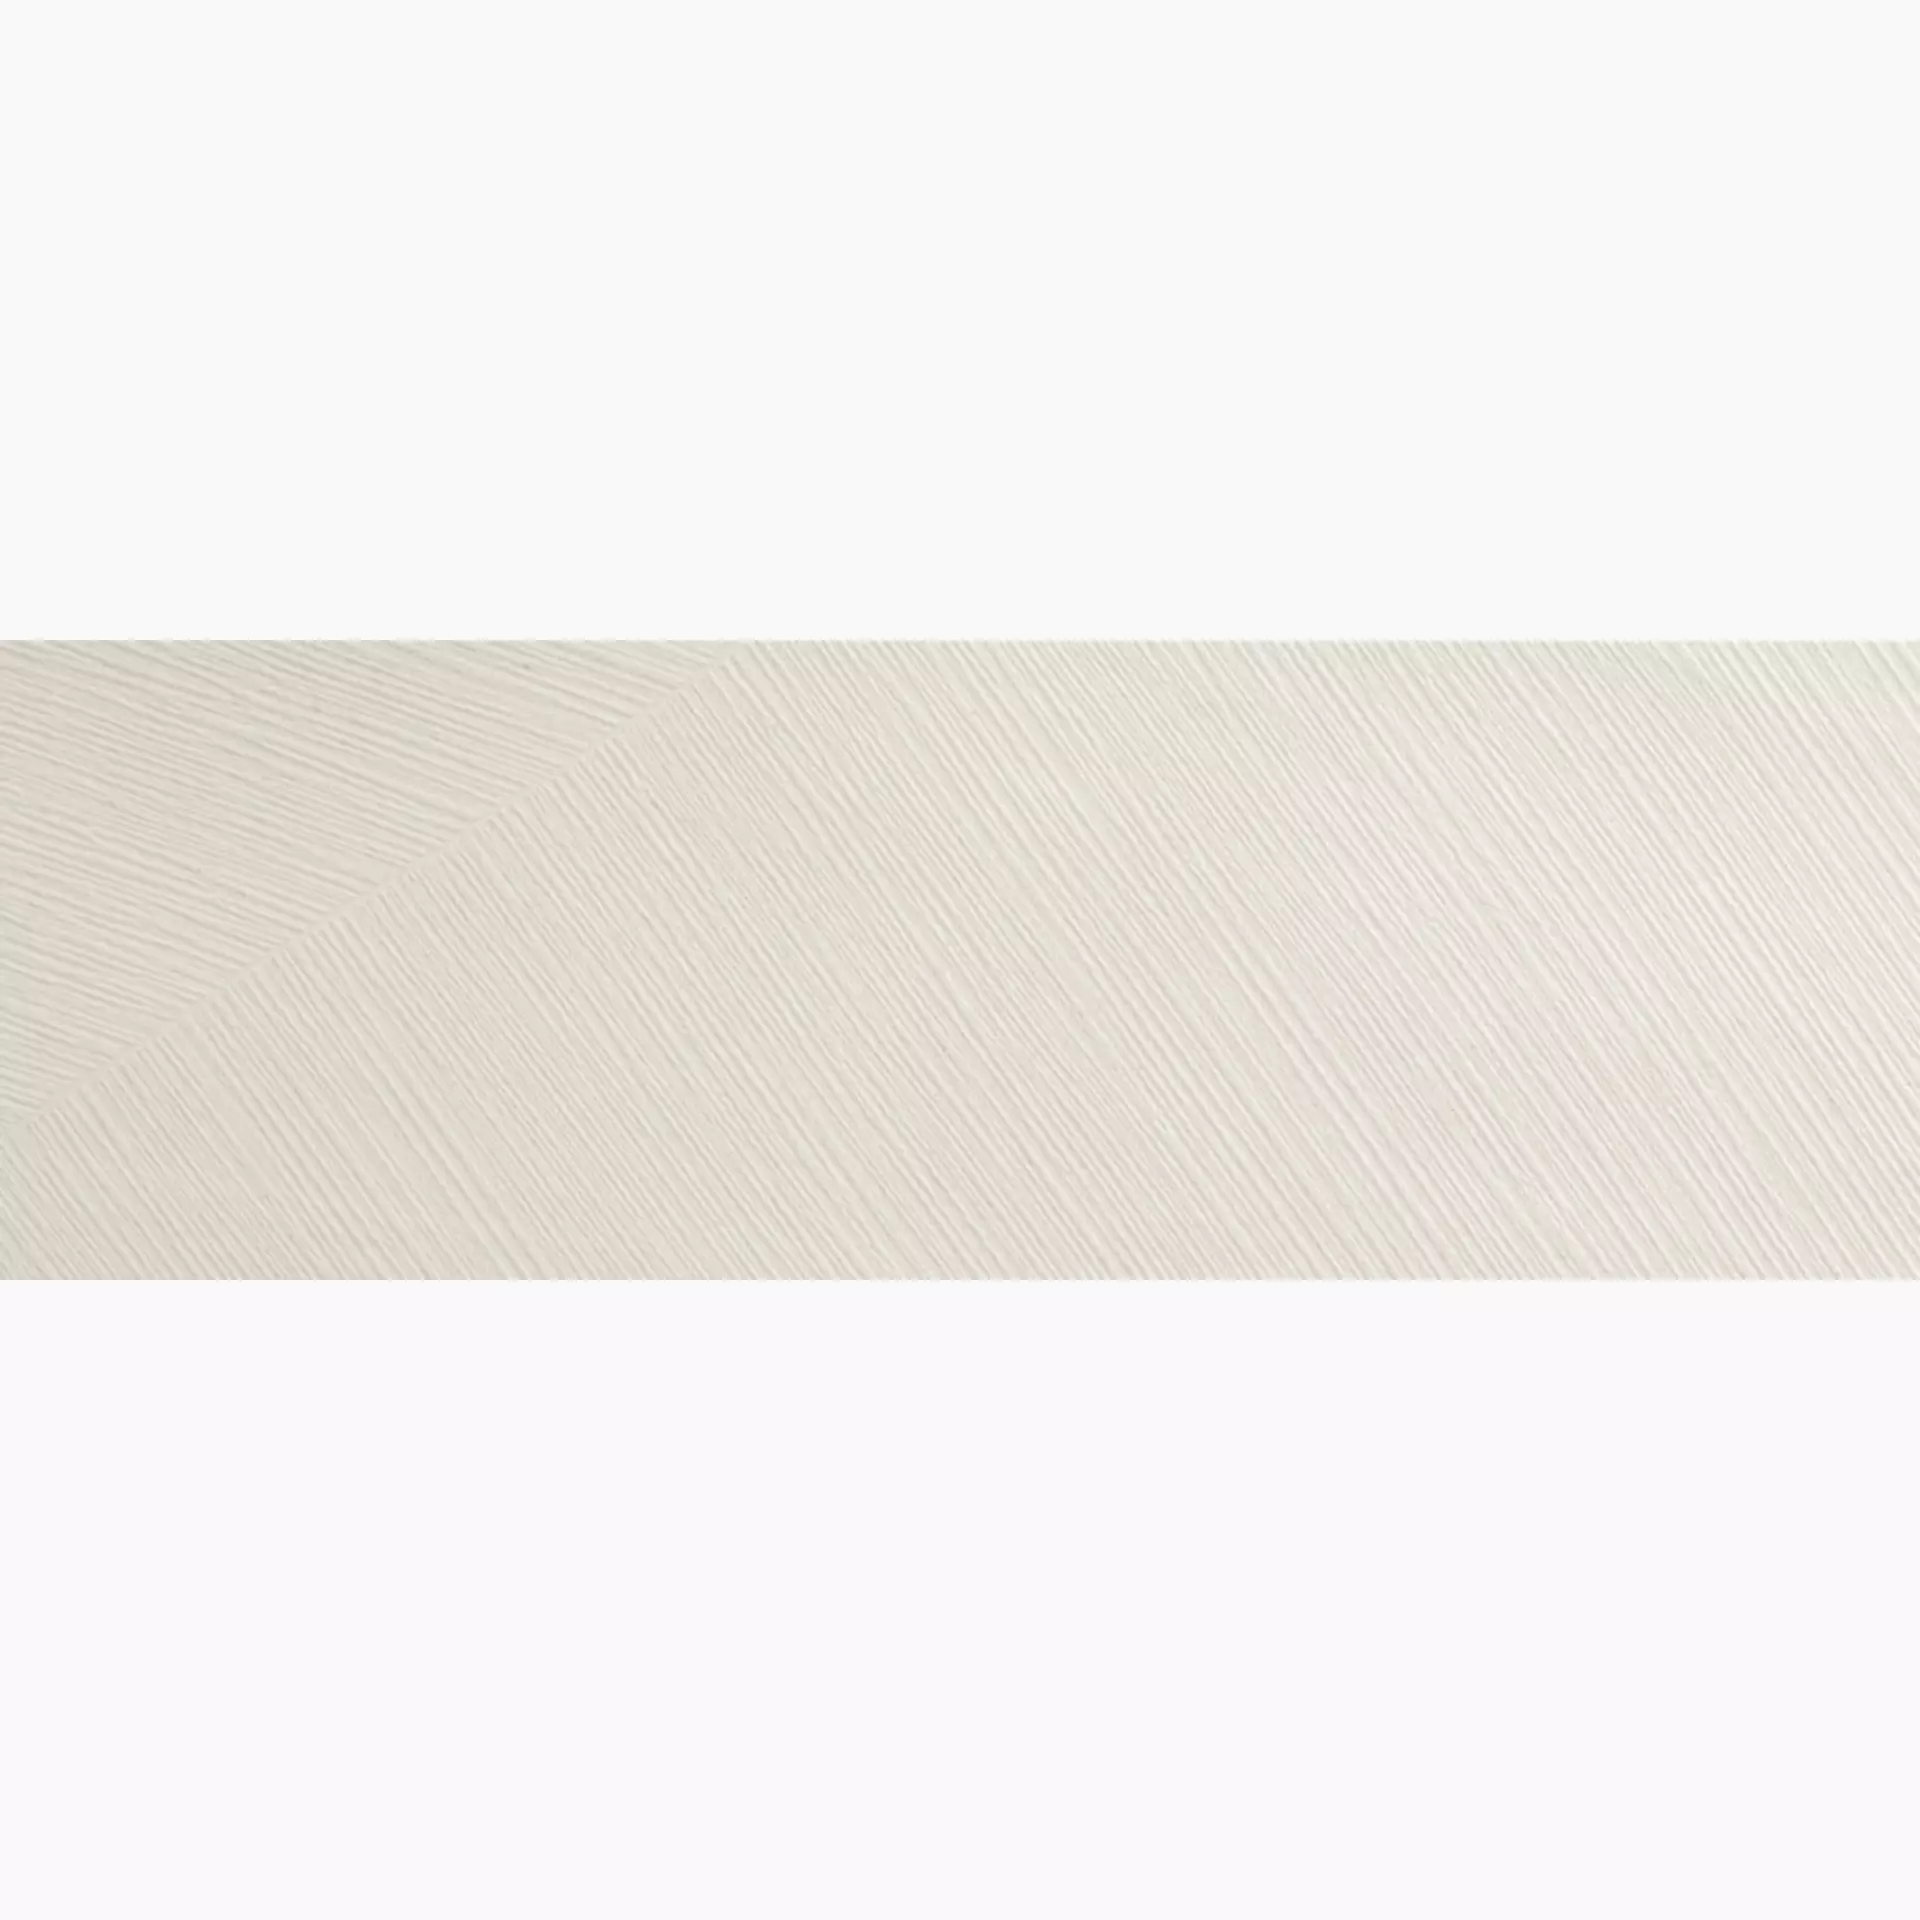 Ariostea Pietra Di Basalto Active Bianco Active – Strutturato IAS575339 25x75cm rectified 10,5mm